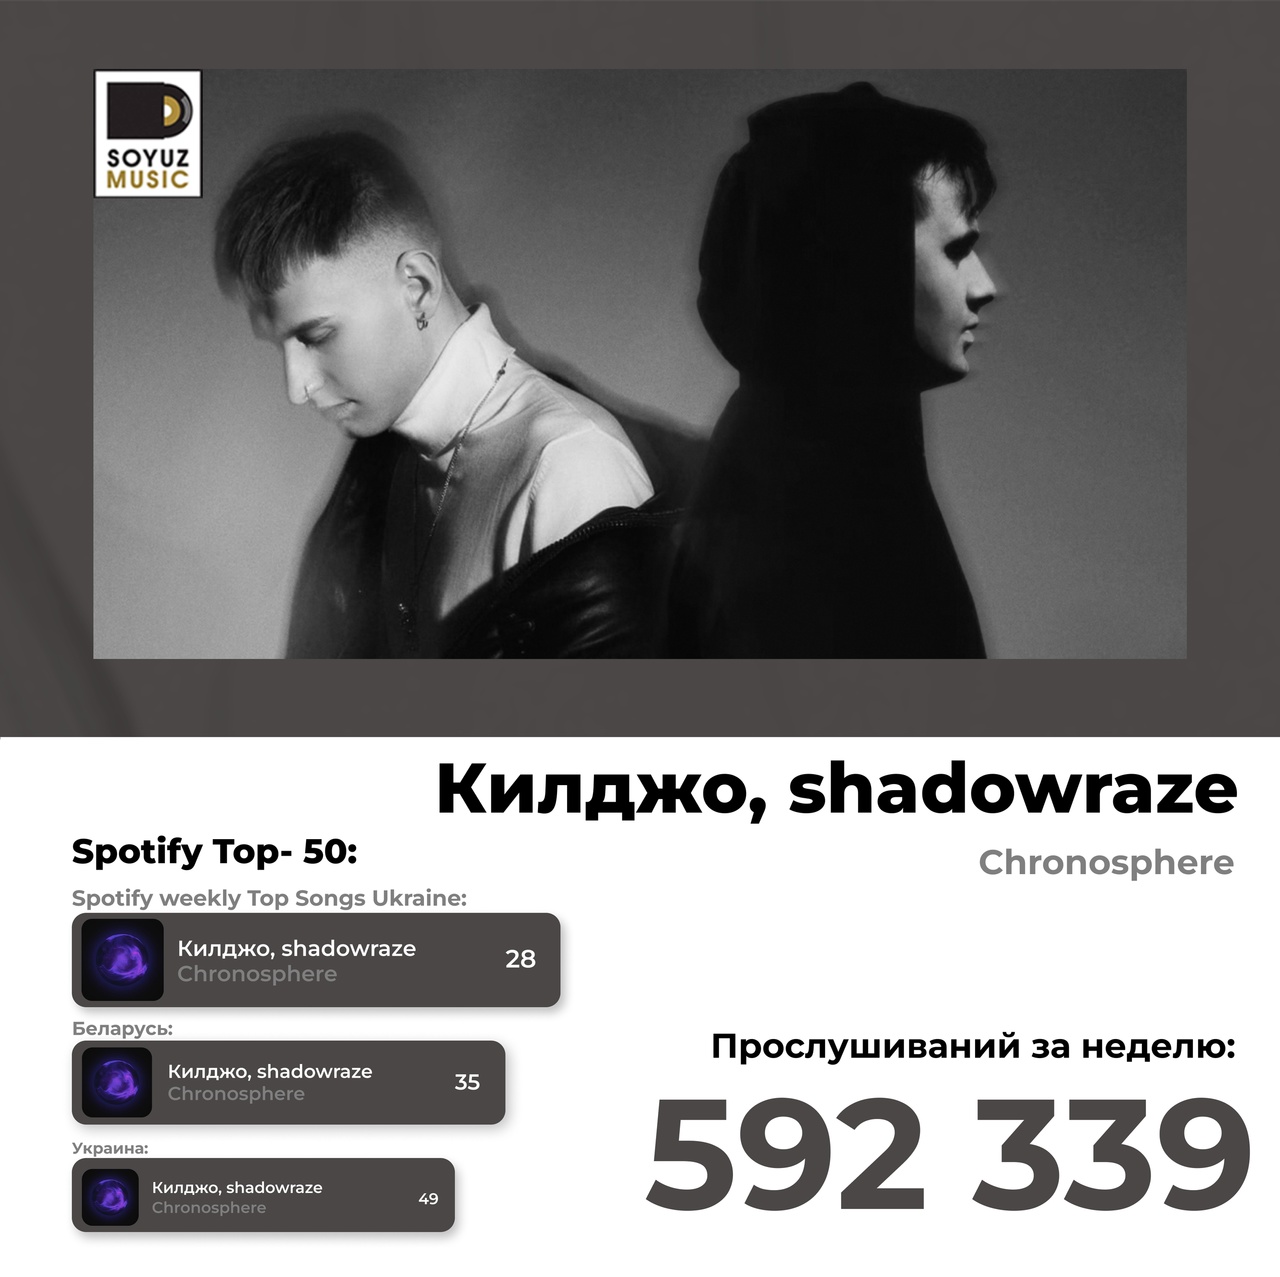 Килджо и shadowraze покоряют чарты Spotify фонк бэнгером «Chronosphere», перешагнув первые полмиллиона прослушиваний.